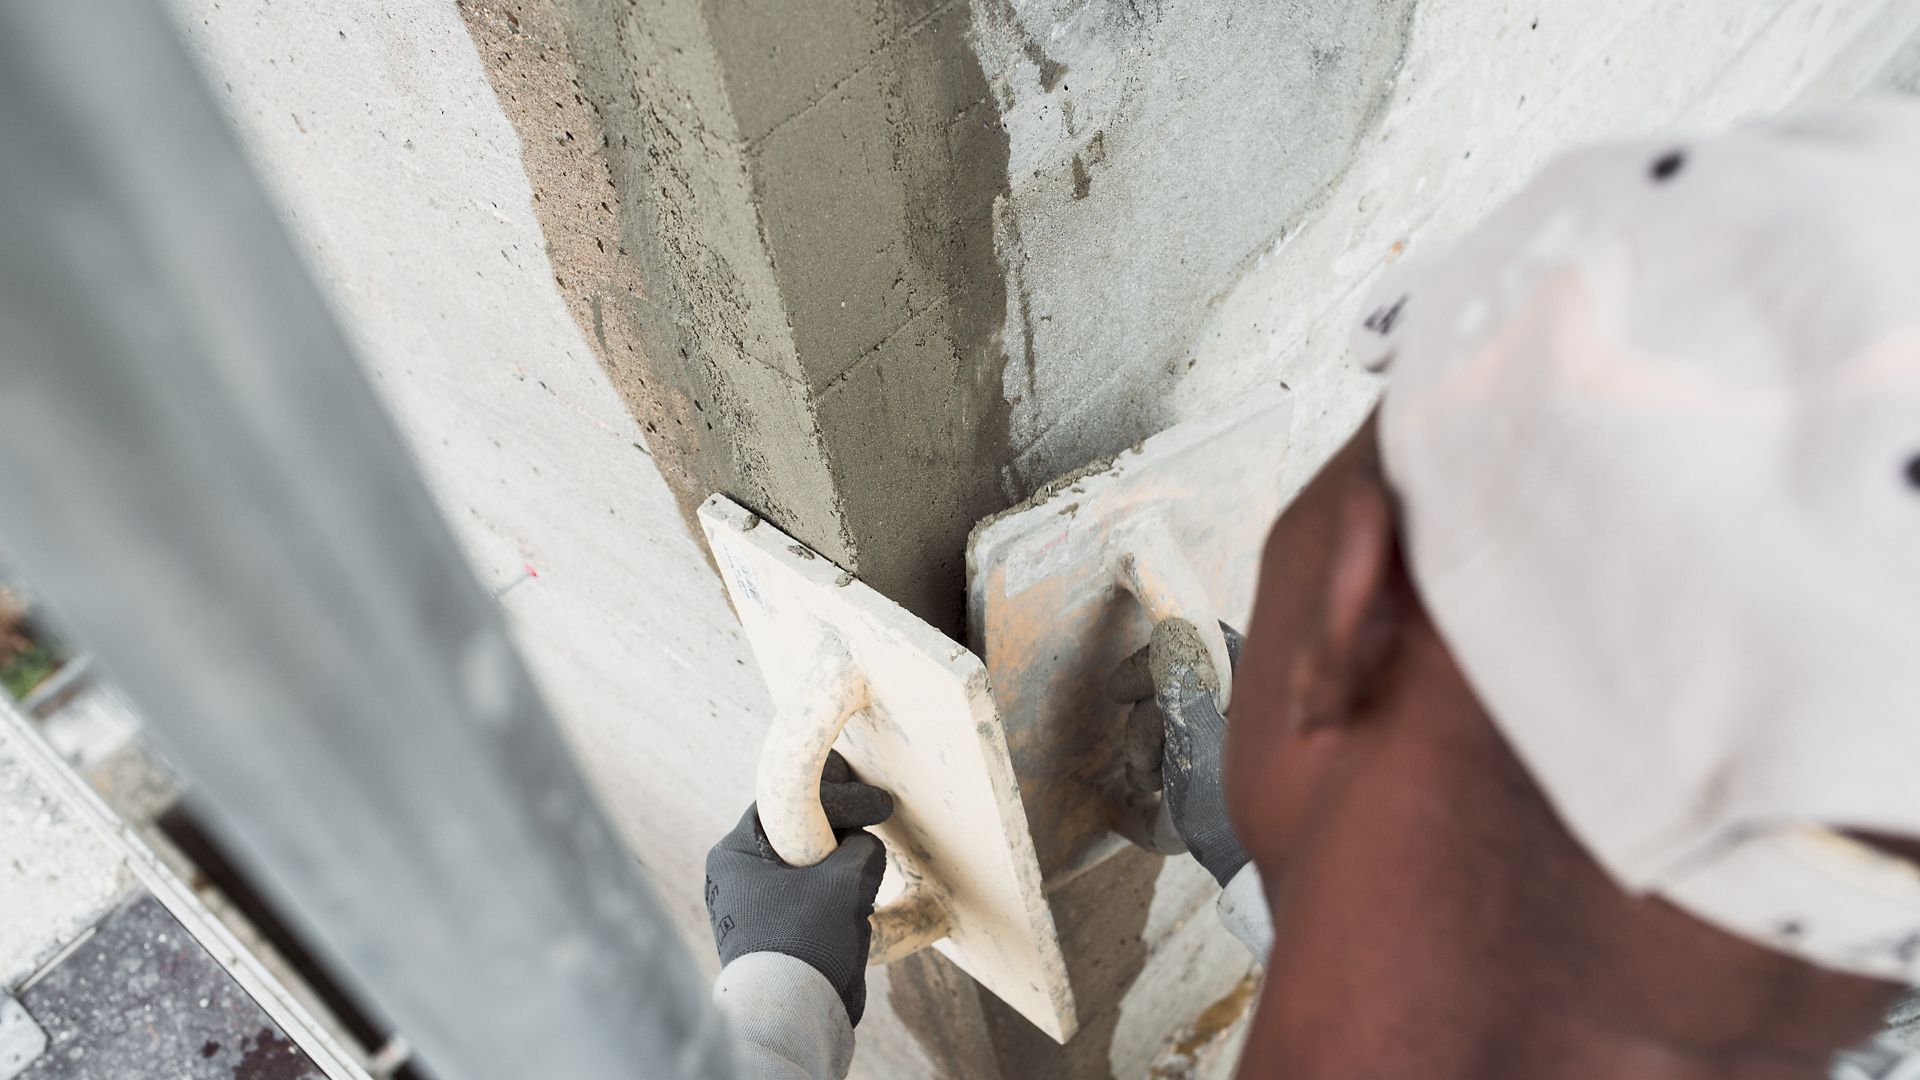 Man repairing concrete wall with Sika repair mortar